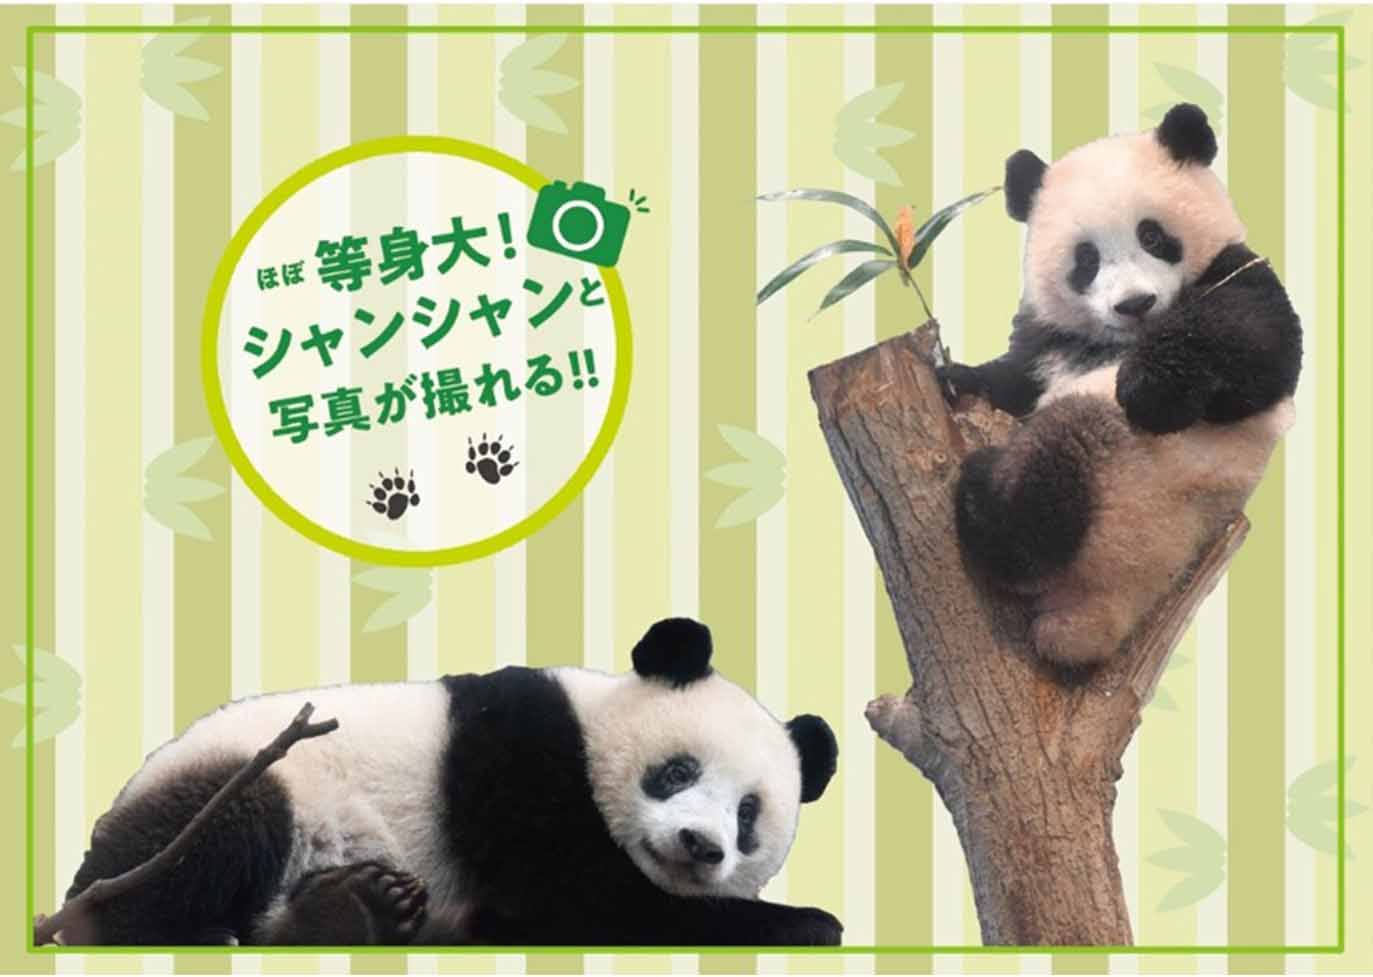 上野動物園“シャンシャン”4歳の誕生日を祝うイベント開催6/9〜29 ...